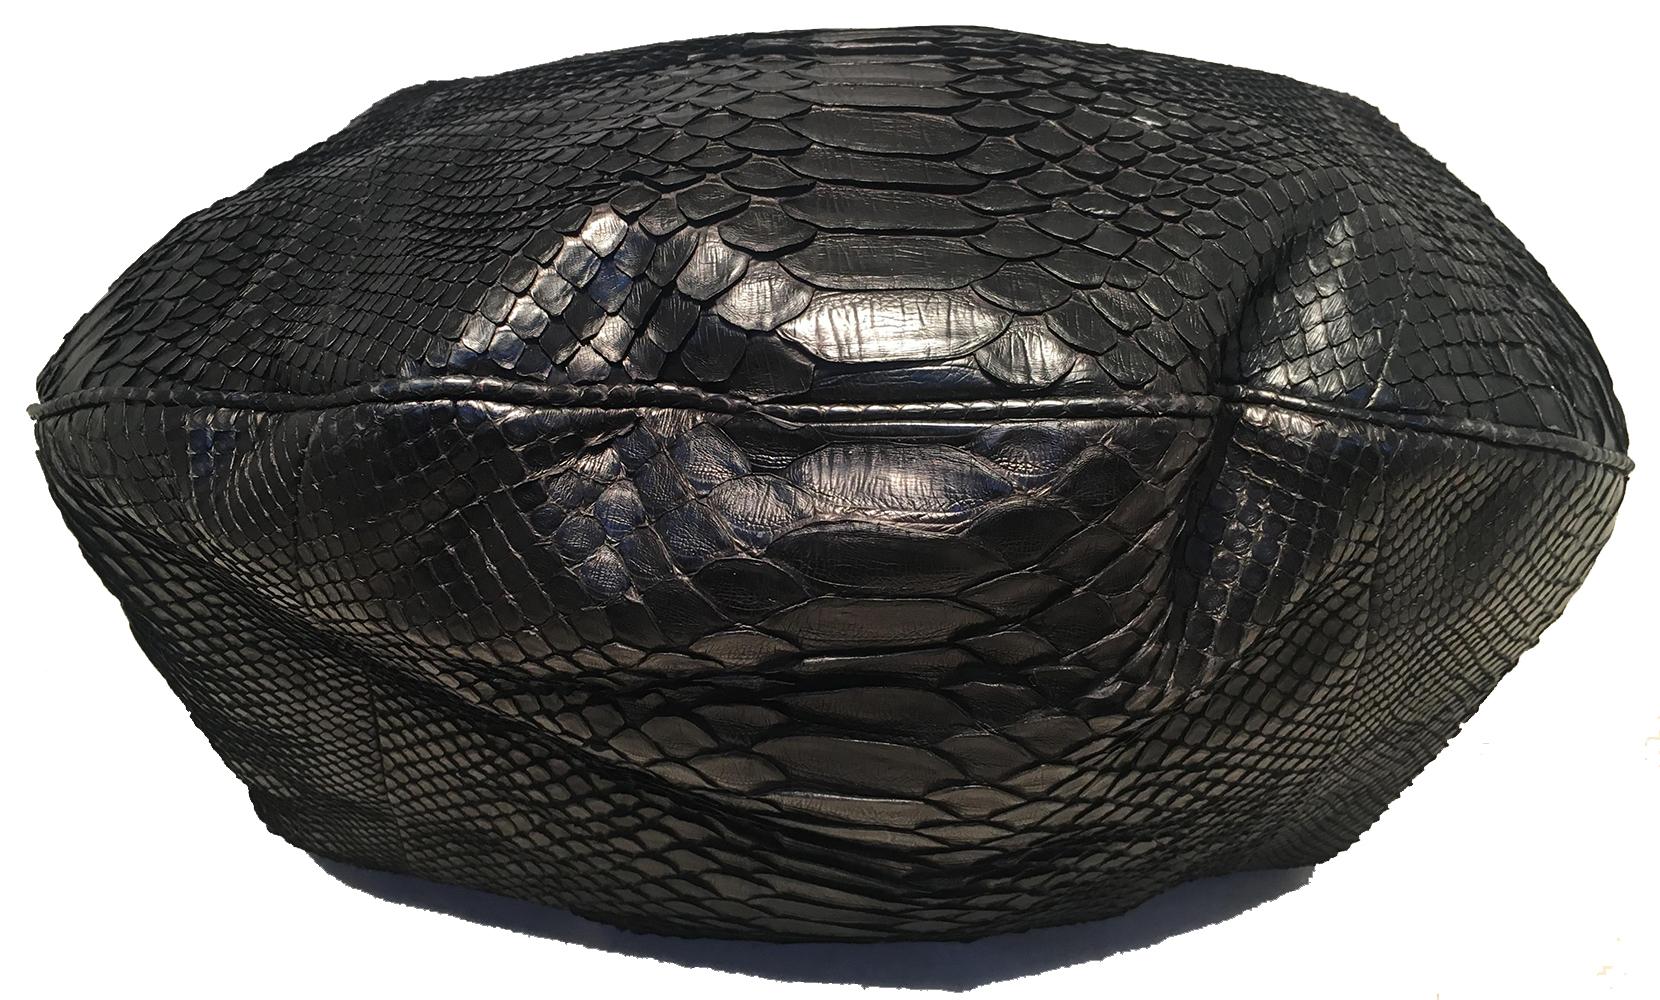 RARE Chanel Runway Black Python Snakeskin Hobo Shoulder Satchel Bag 1